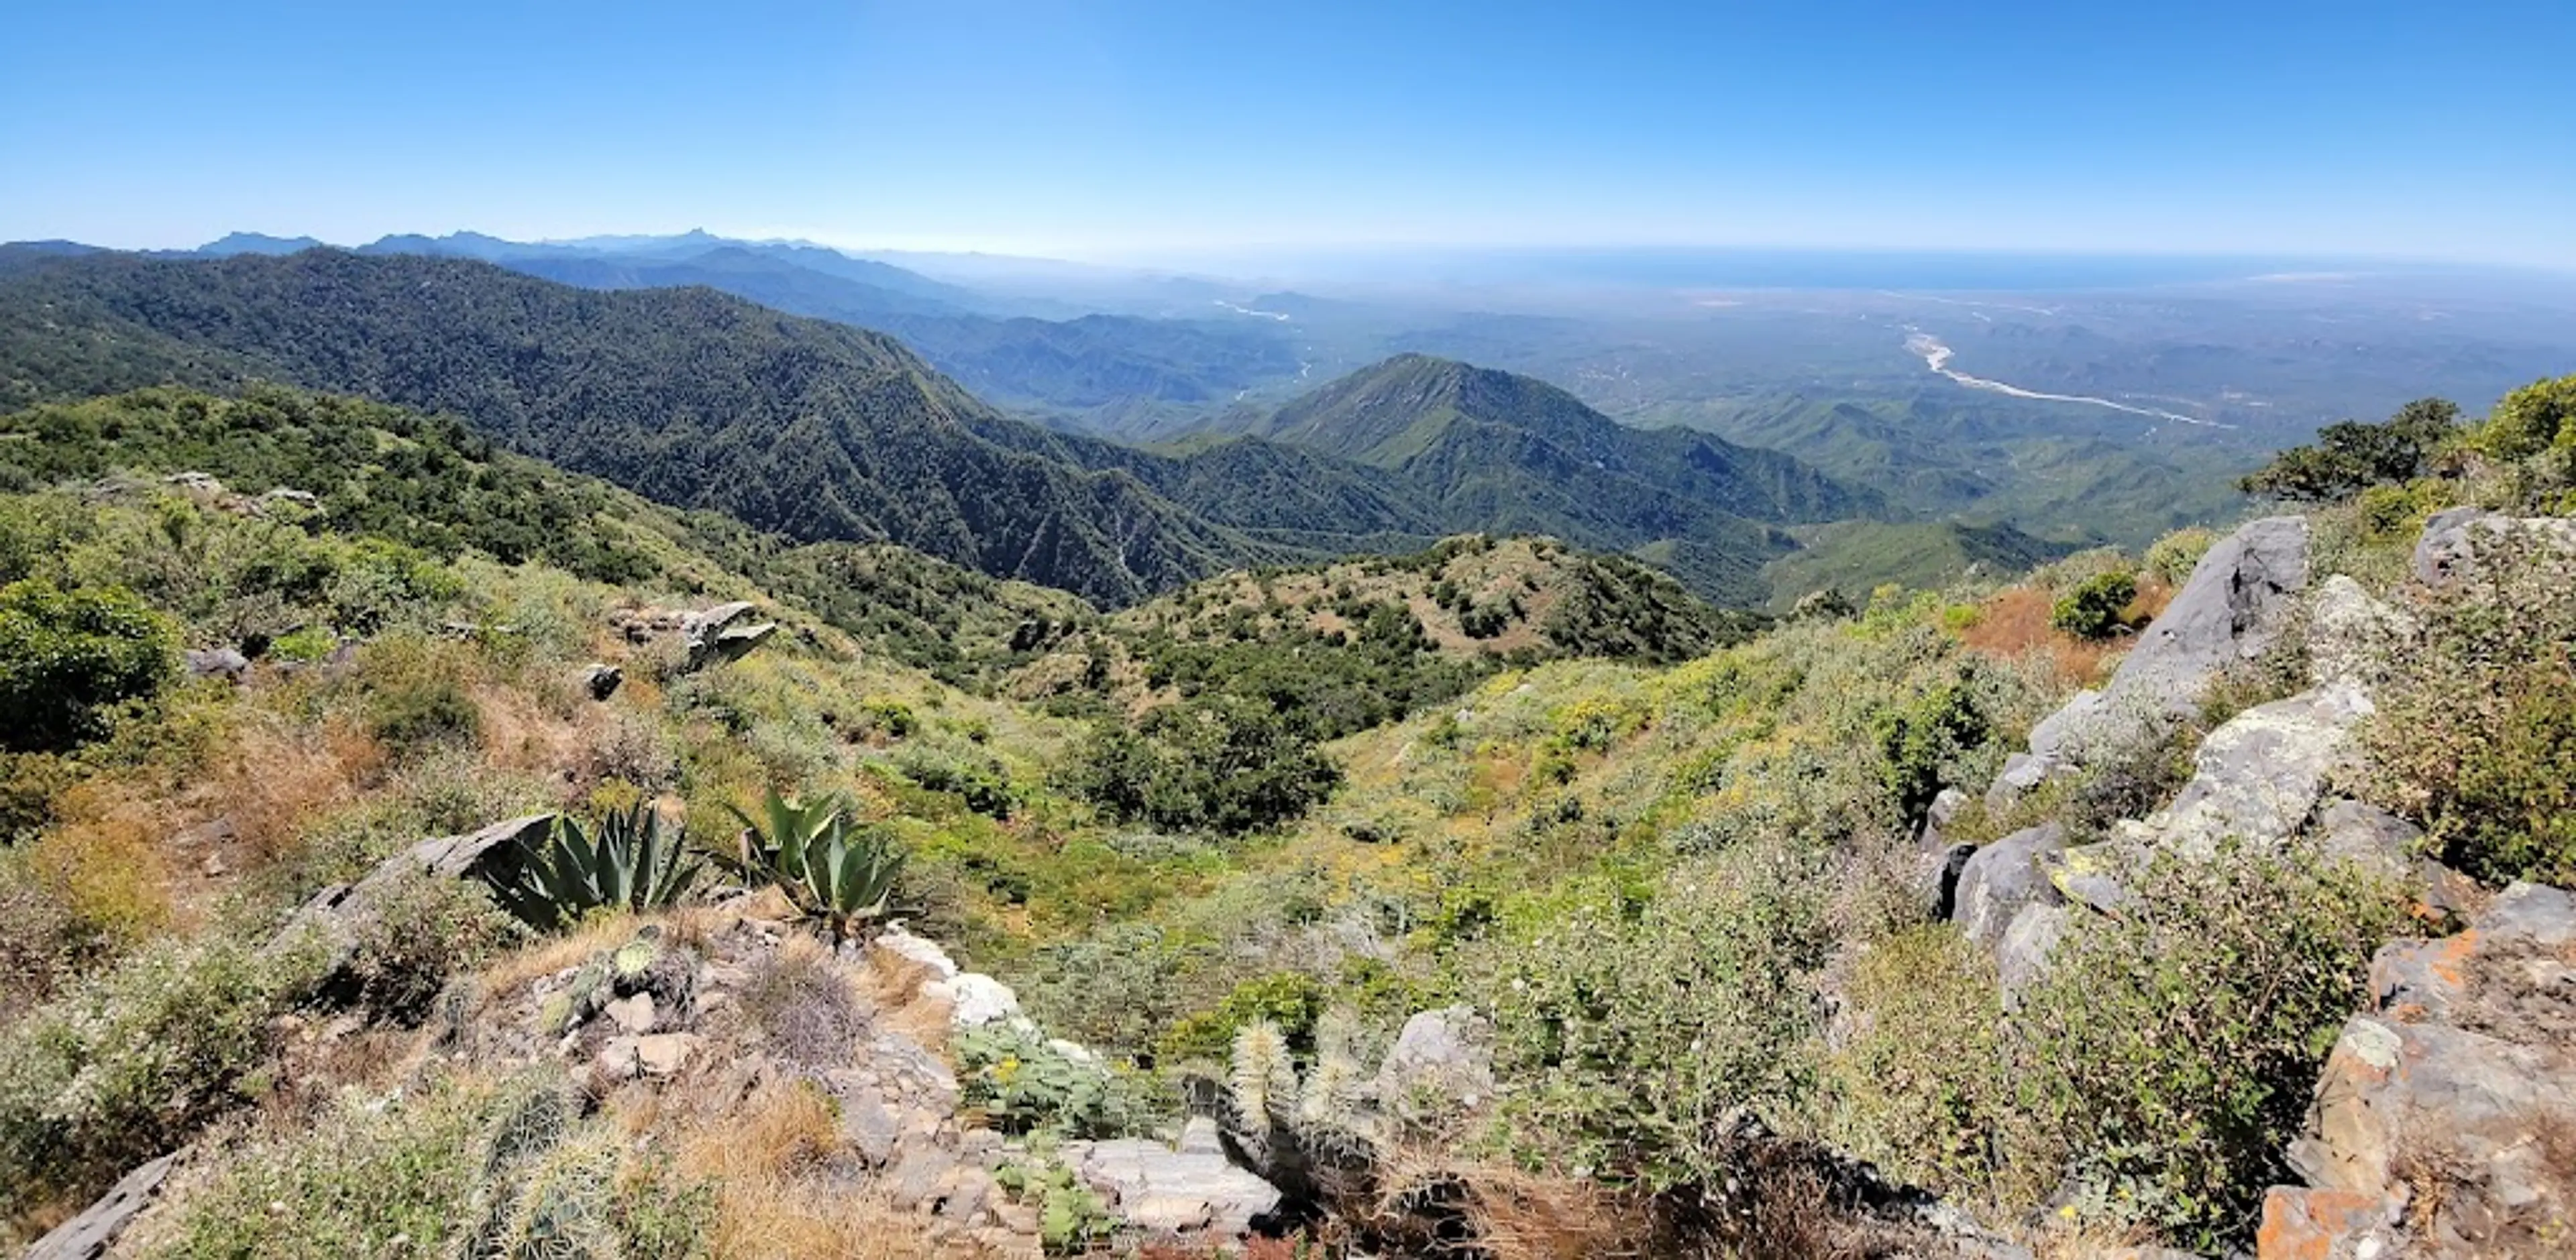 Sierra de la Laguna Biosphere Reserve